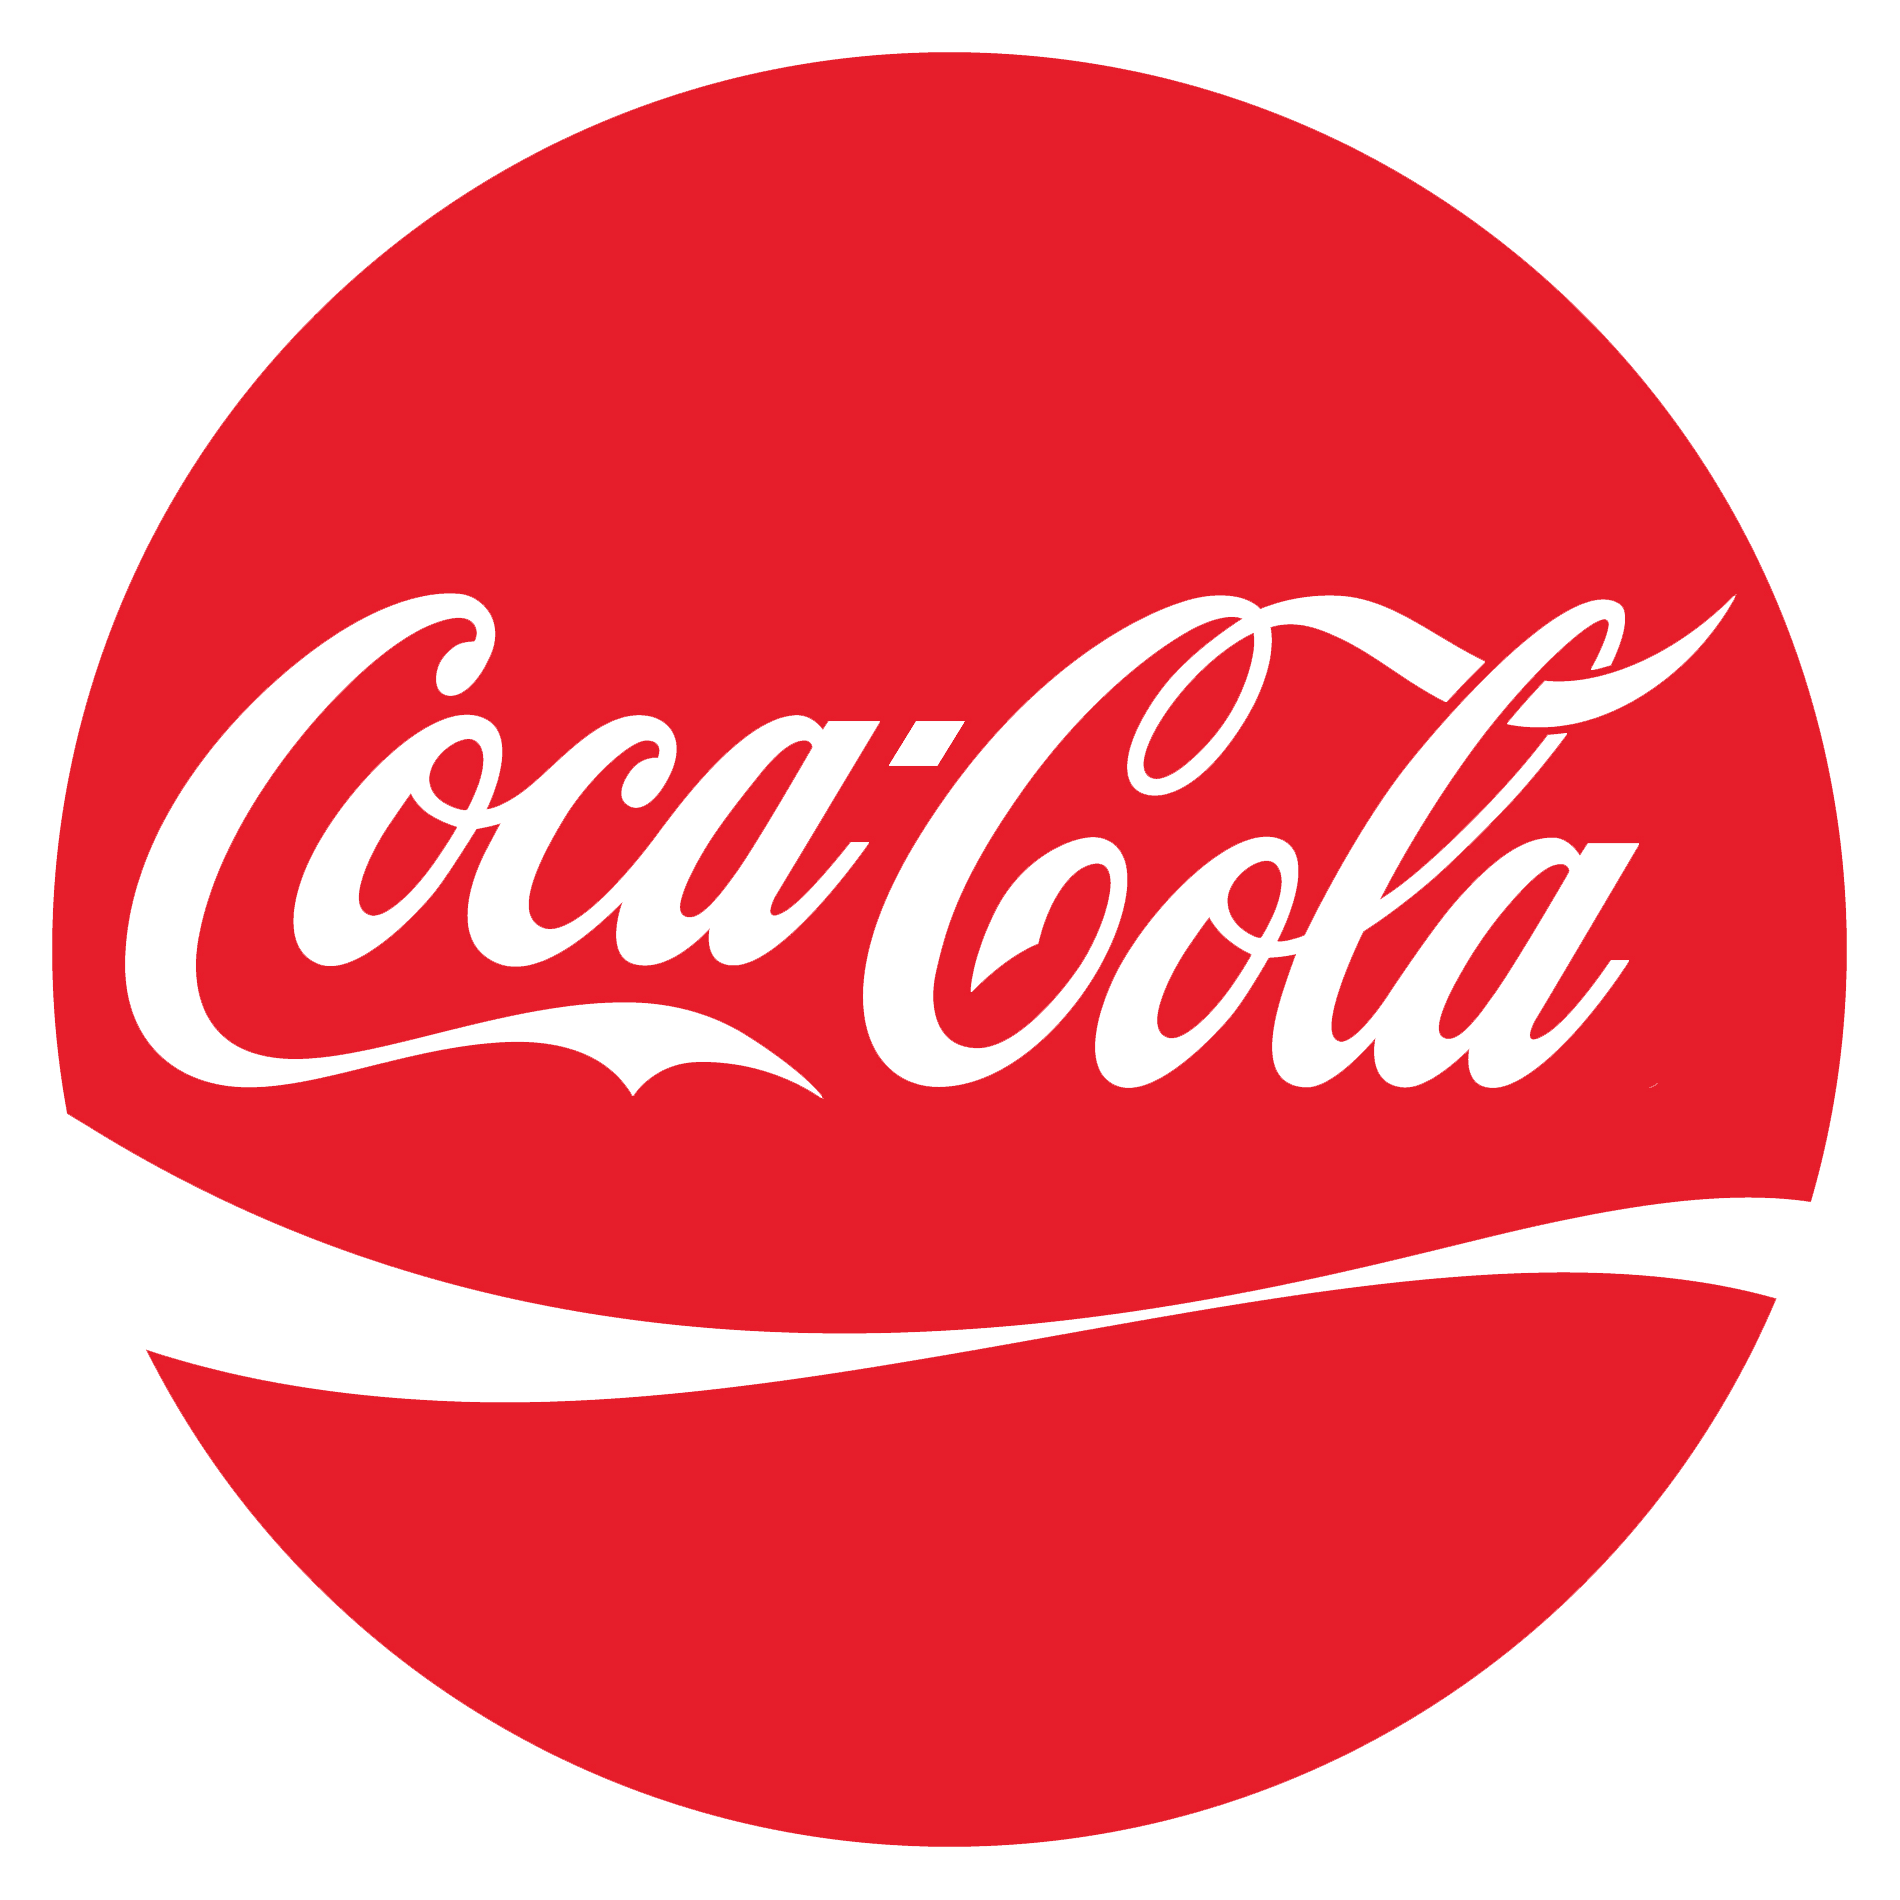 Cola Logo - Coca-Cola-Logo - MultiGP Drone Racing League | FPV Racing League